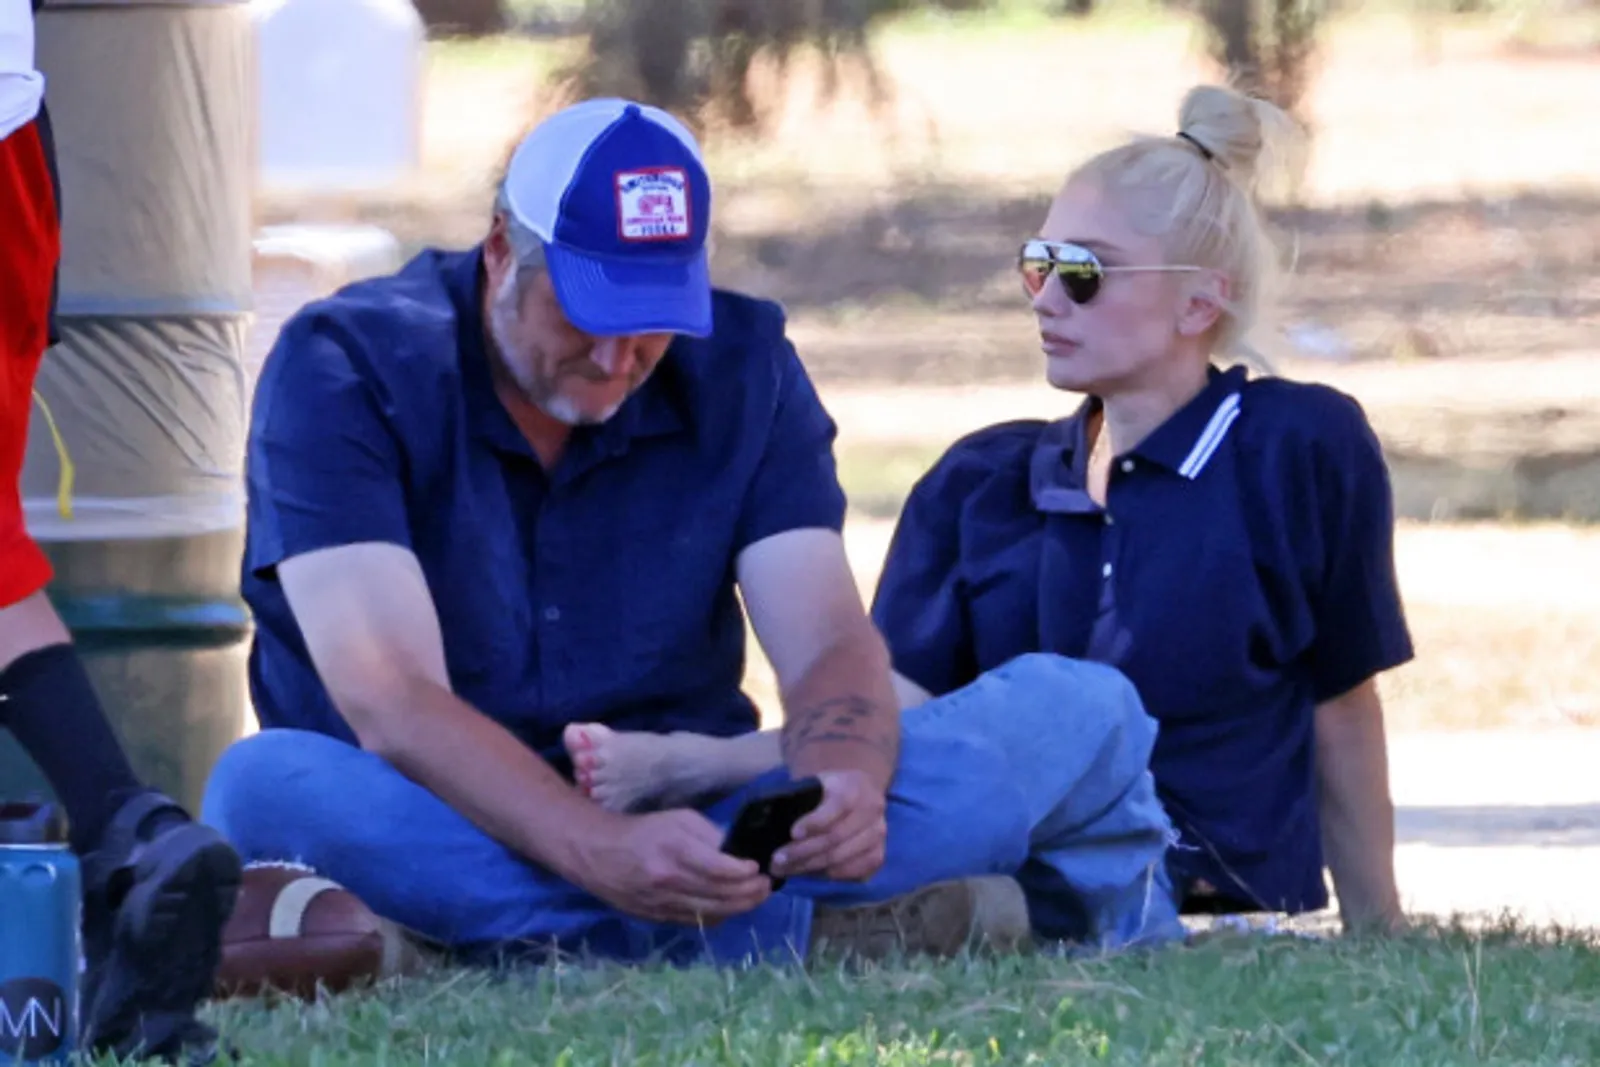 Benarkah Gwen Stefani & Blake Shelton Diam-Diam Menikah? Ini Faktanya